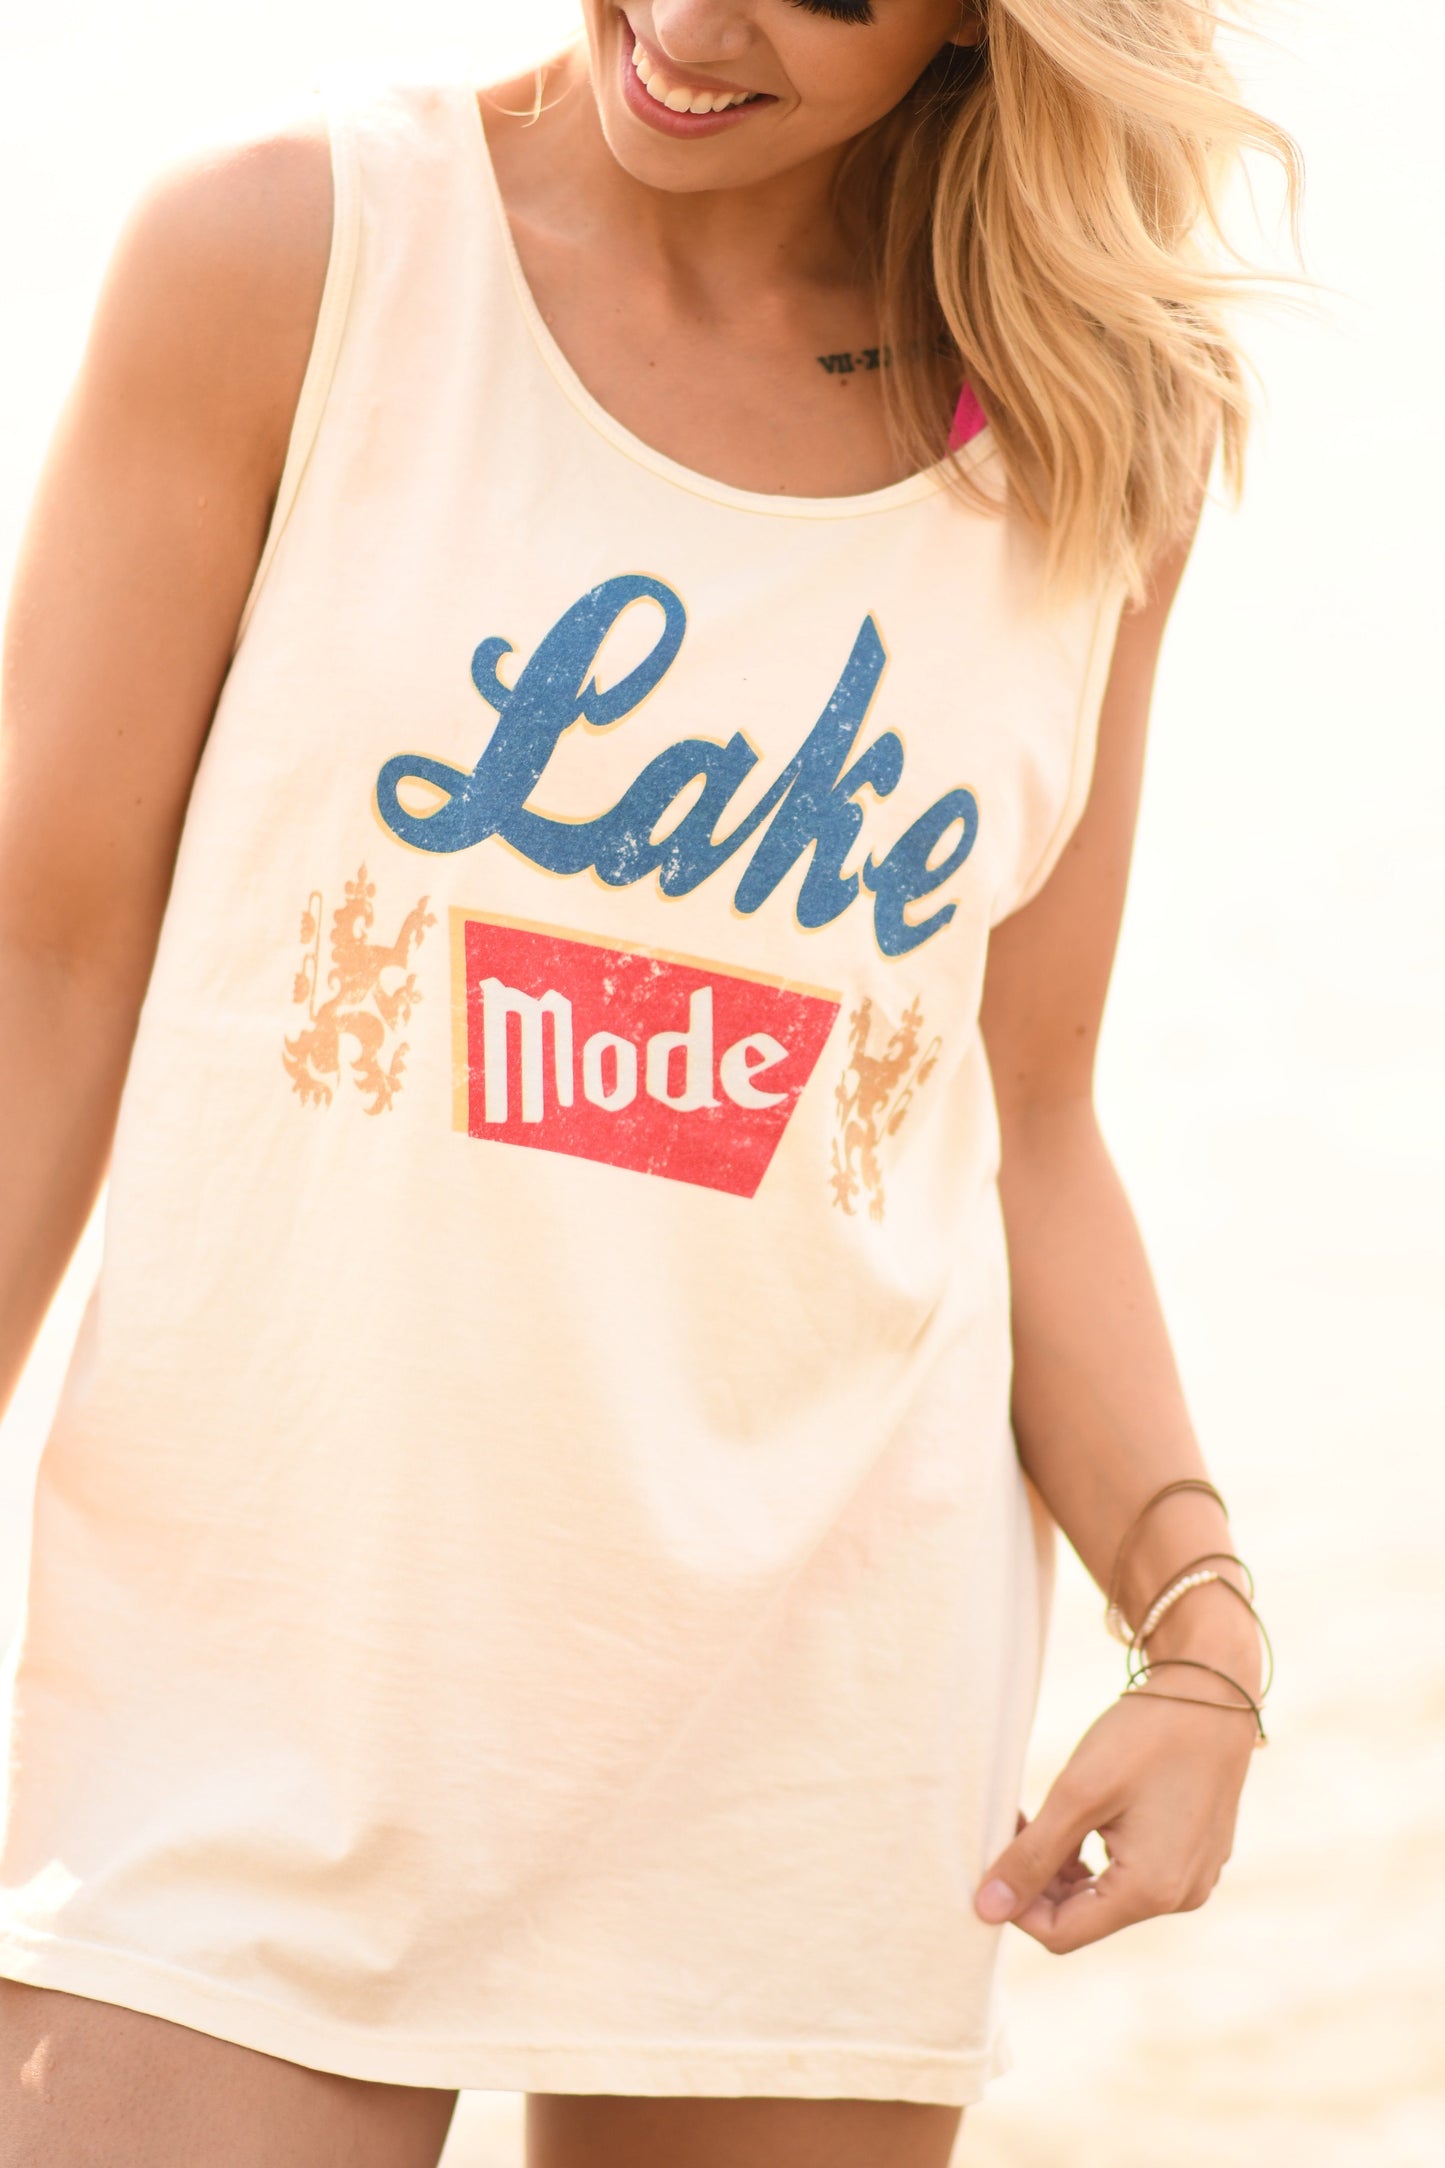 Lake Mode Tank Top